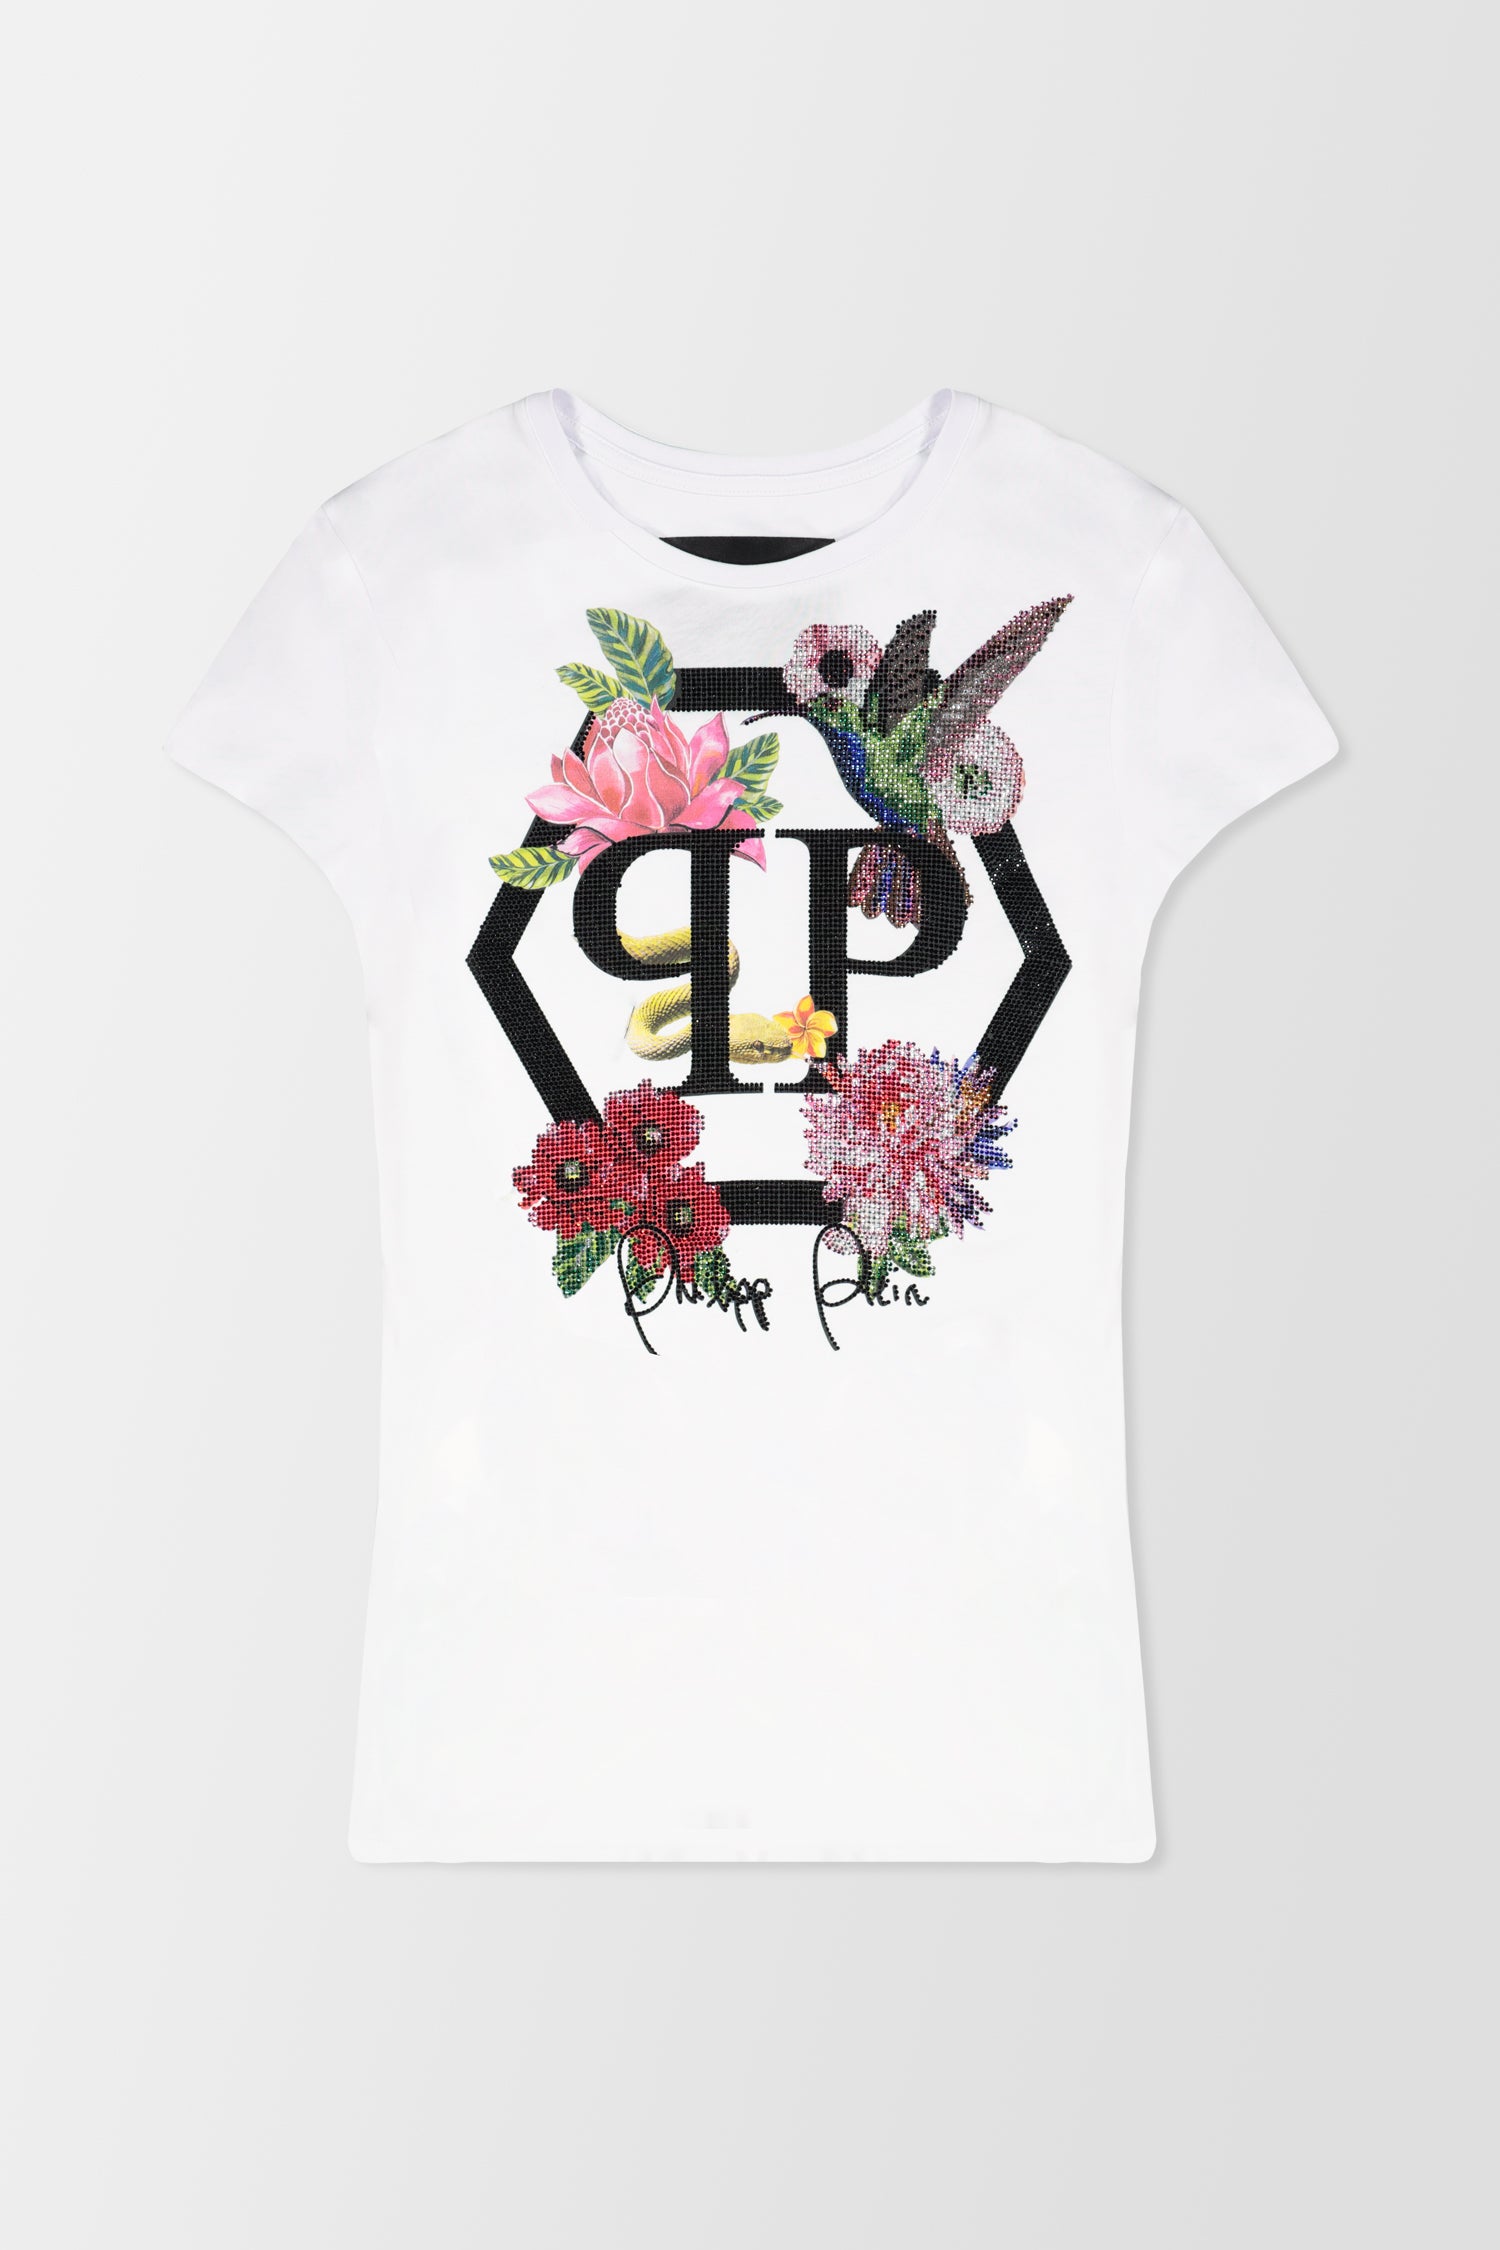 Philipp Plein White Round Neck SS Flowers T-Shirt